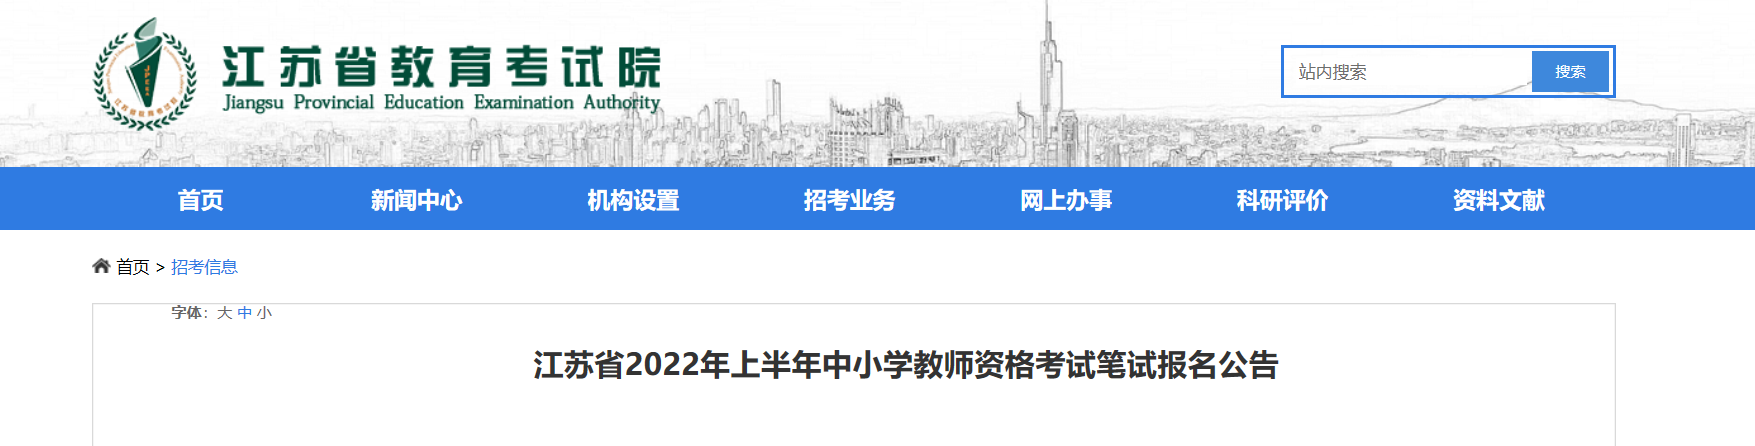 2022上半年江苏中小学教师资格证报名时间、条件及入口【1月24日-25日】